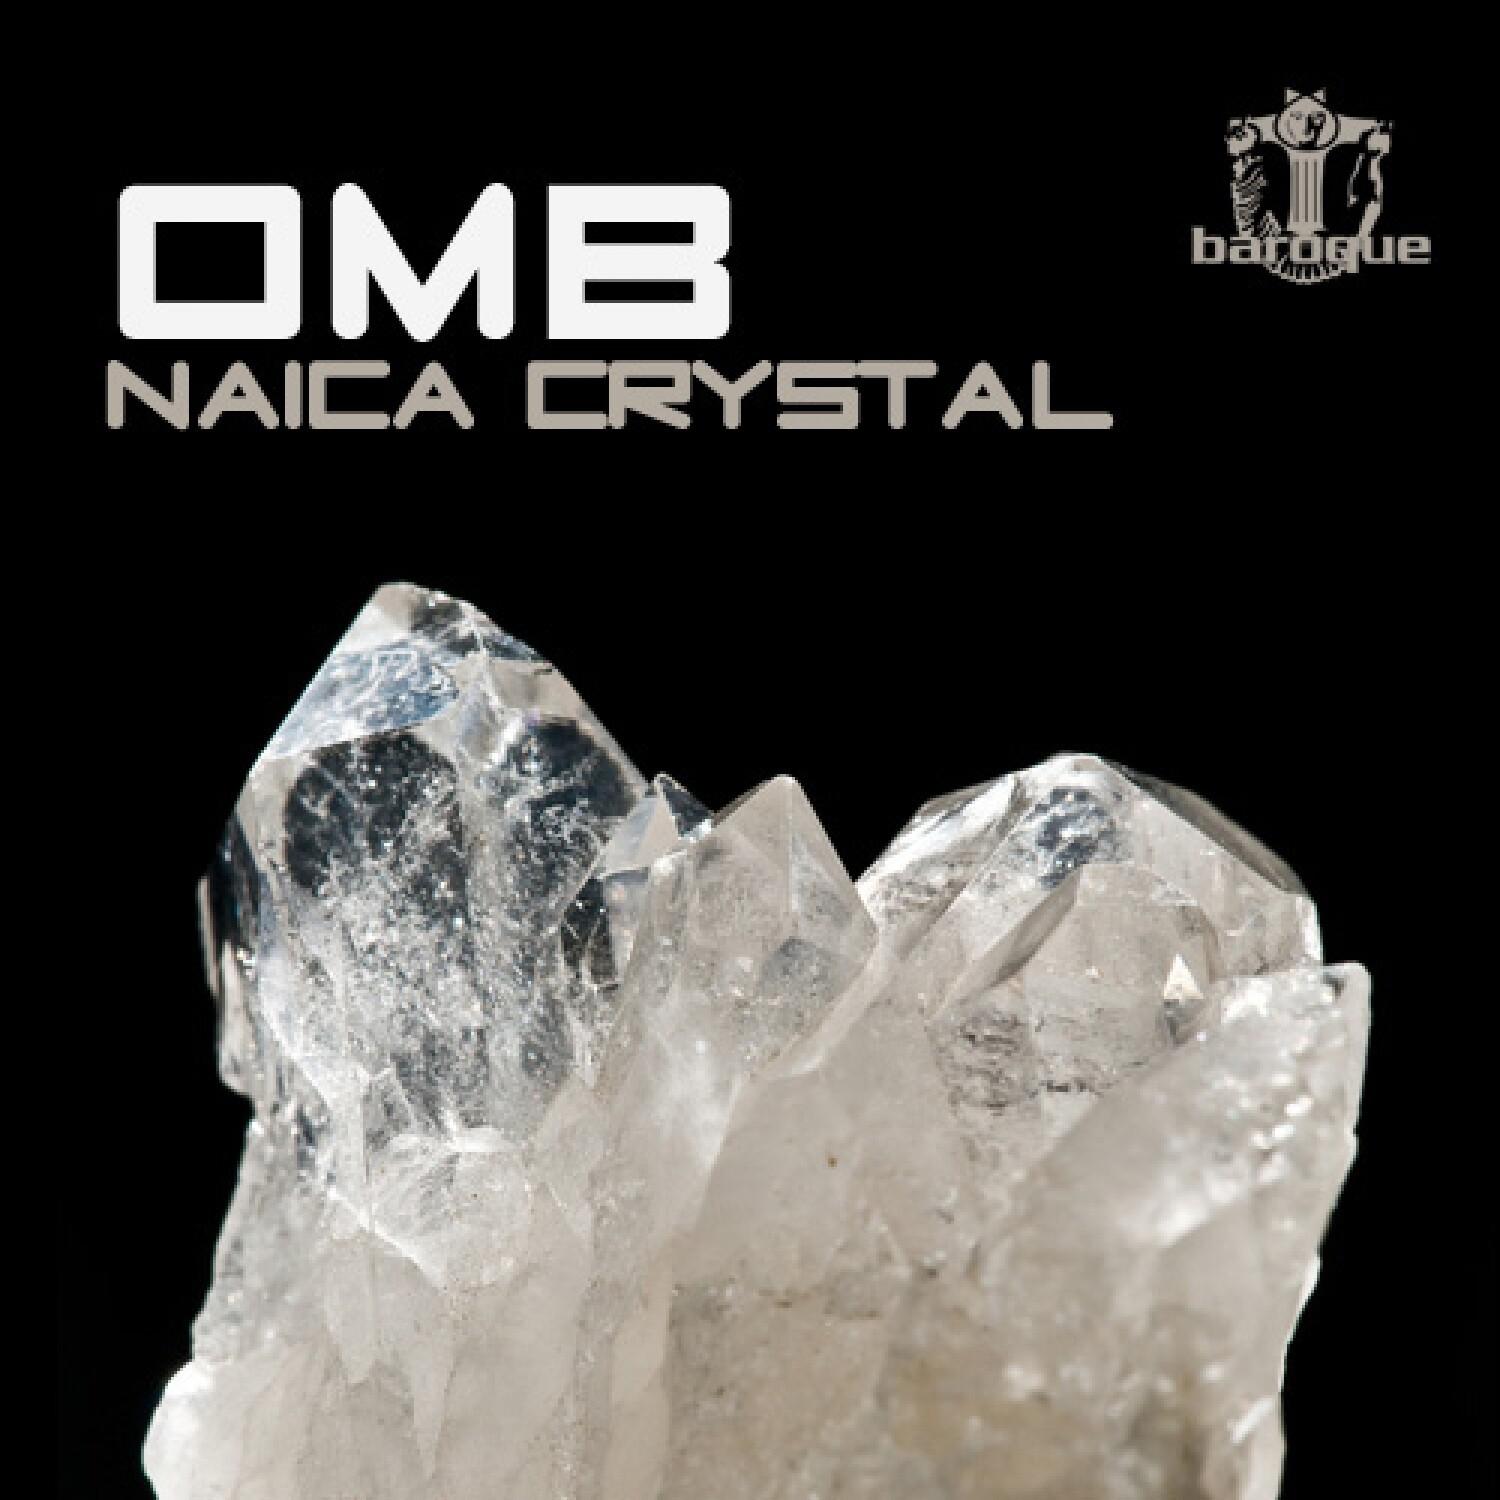 Naica Crystal